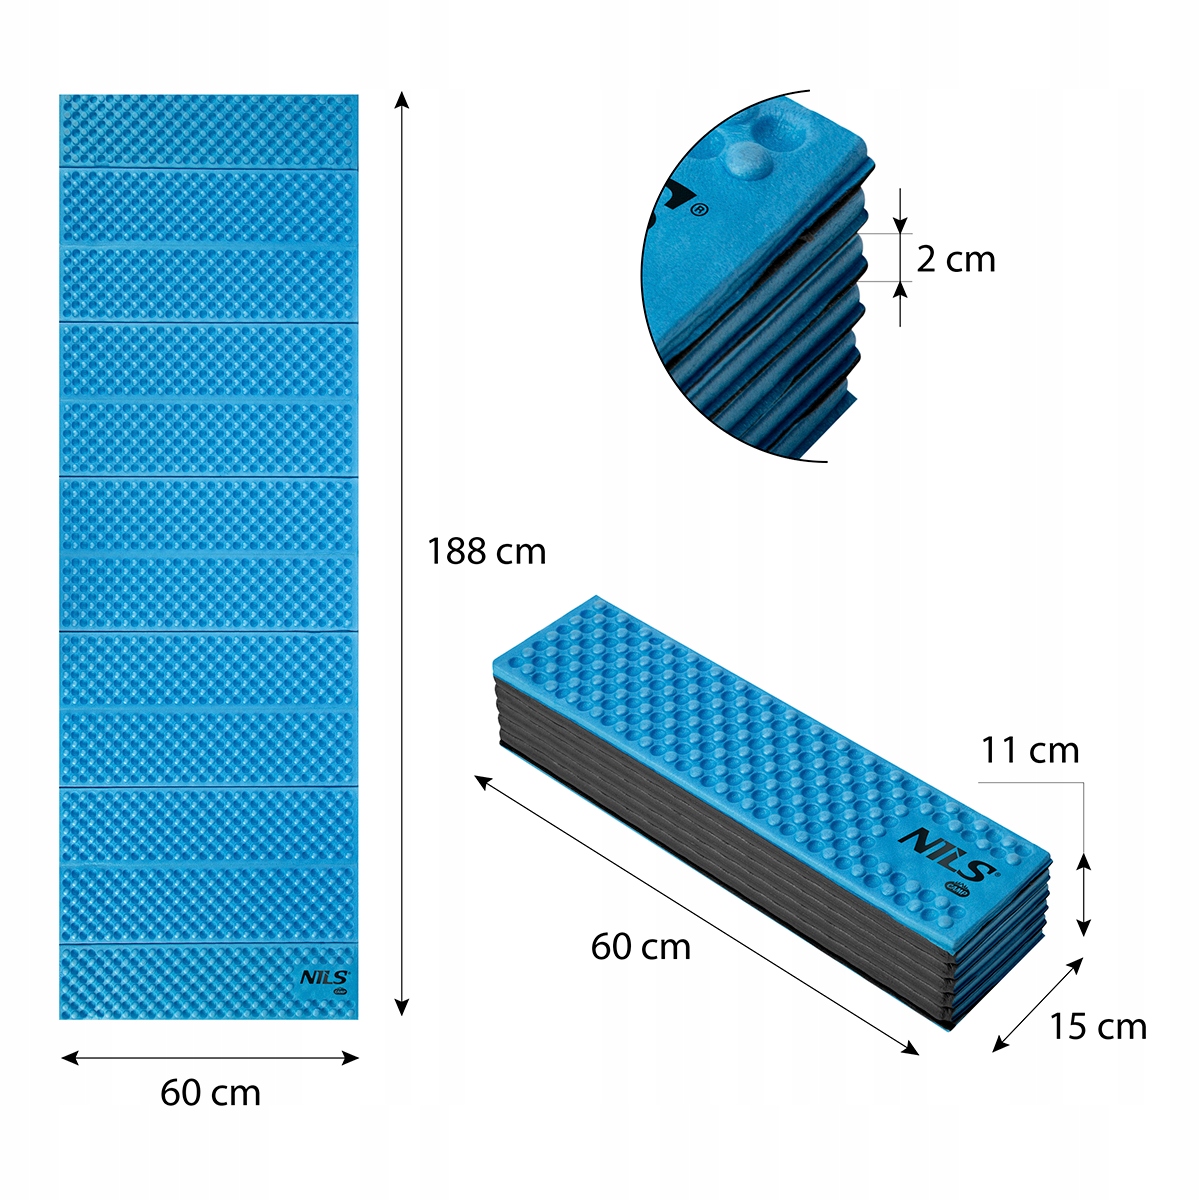 NILS storas sportinis kilimėlis pratimams, sulankstomas 188cm EAN (GTIN) 5907695545814